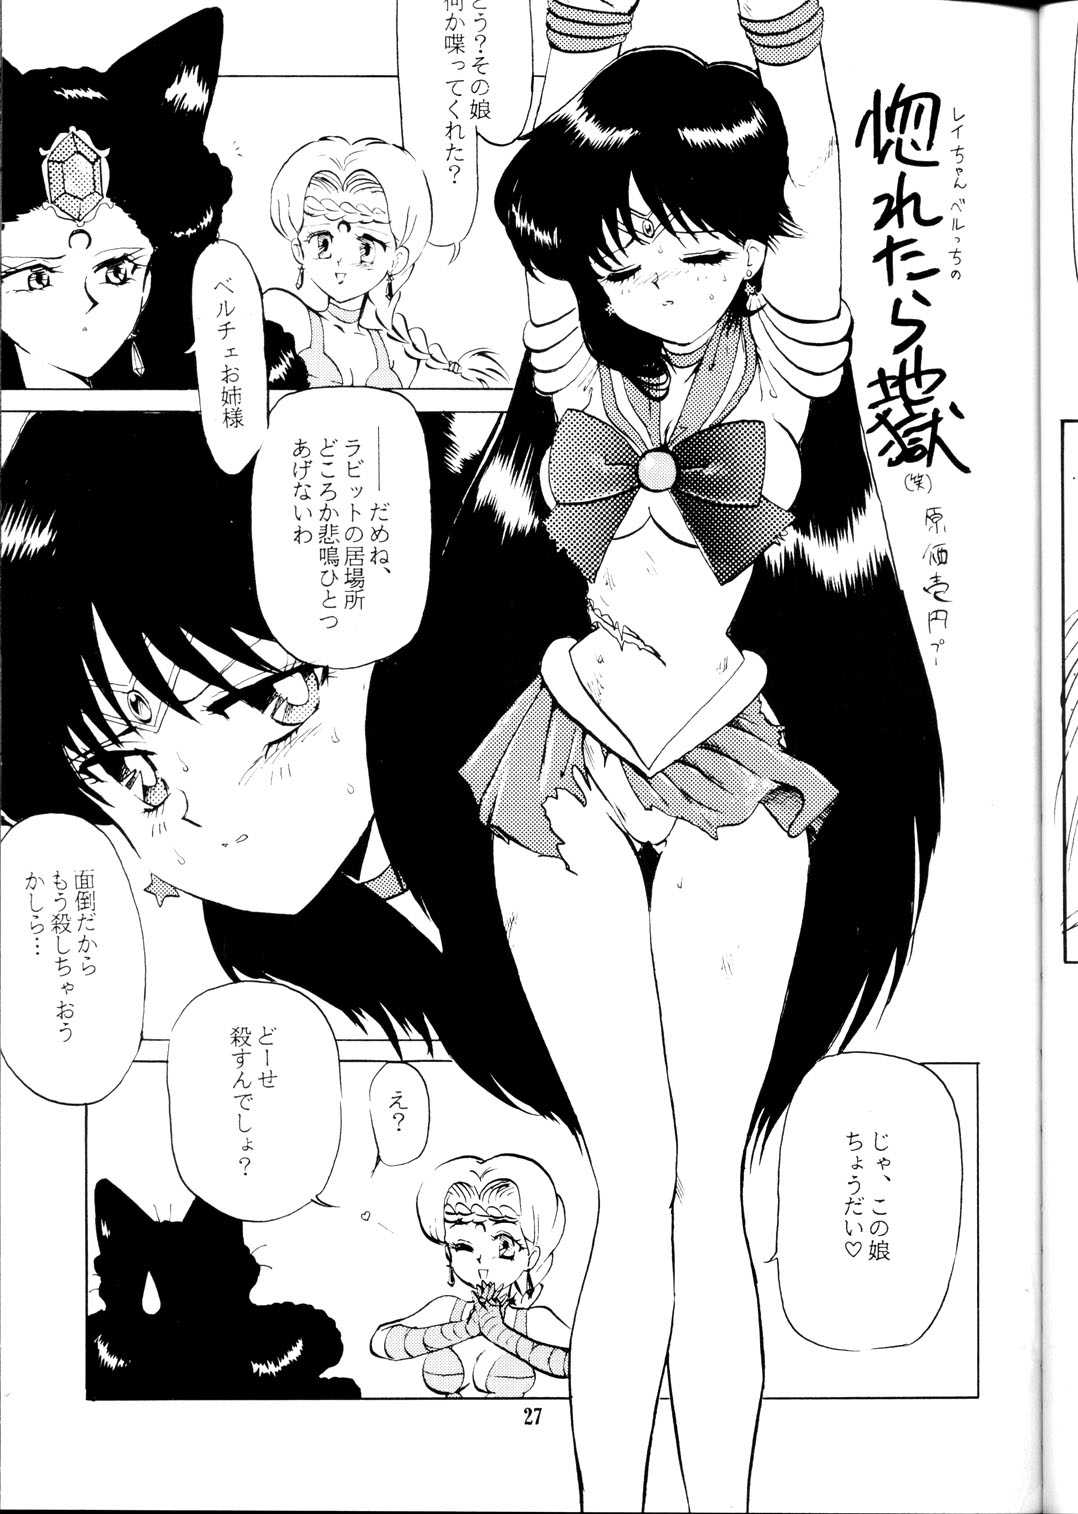 [Xander Drax Scans] Tenchi / Sailor Moon Doujinshi  (Sasami and Chibi Moon) 